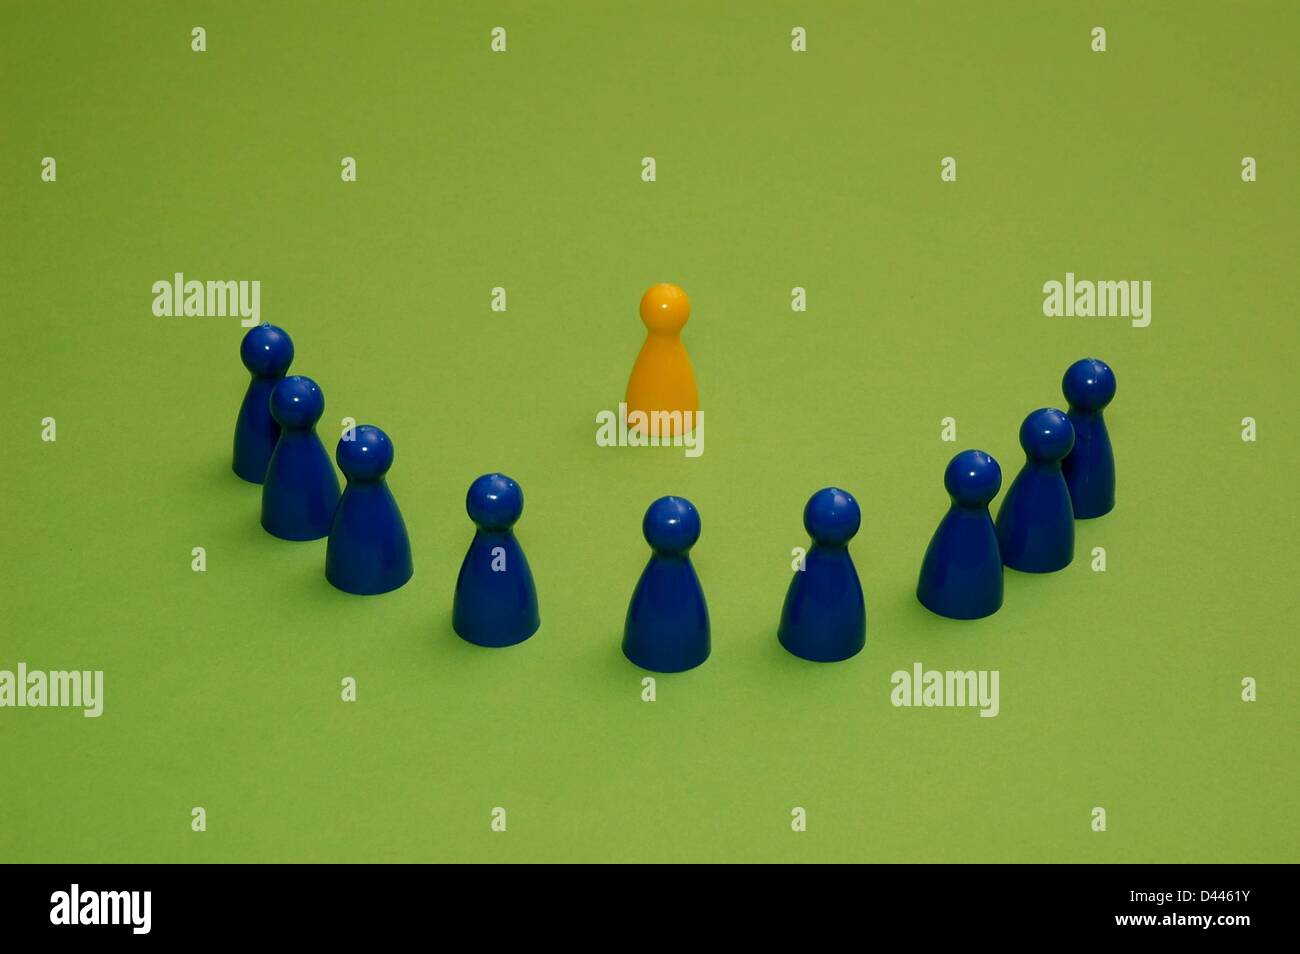 Illustrazione - nove pezzi di gioco blu si trovano a semicerchio intorno a un pezzo di gioco giallo a Berlino, Germania, 28 dicembre 2007. Fotoarchiv für ZeitgeschichteS.Steinach Foto Stock